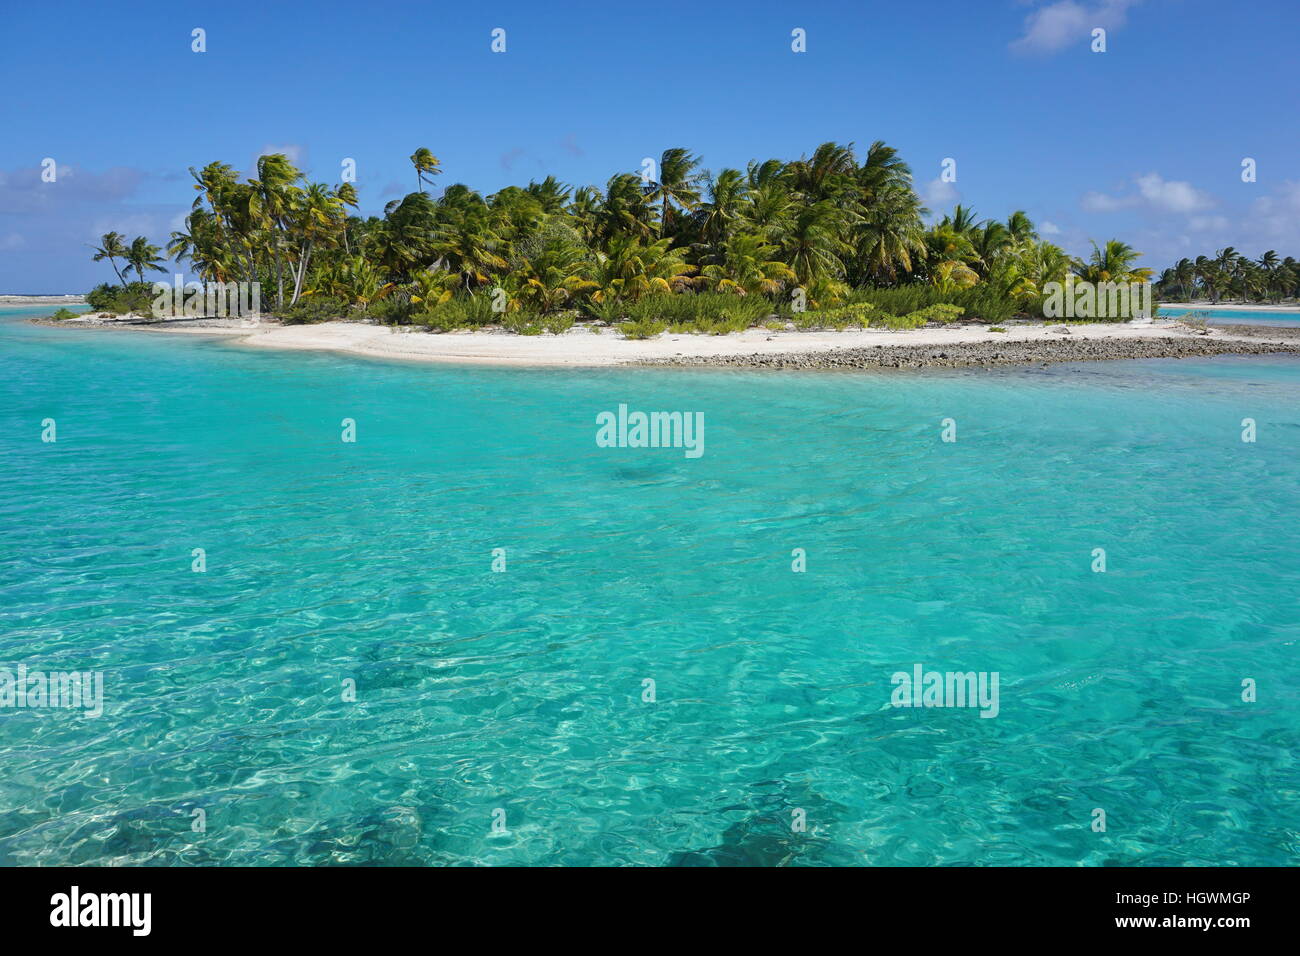 L'îlot tropical avec des cocotiers et l'eau turquoise, de l'atoll de Tikehau, archipel des Tuamotu, en Polynésie française, l'océan Pacifique sud Banque D'Images